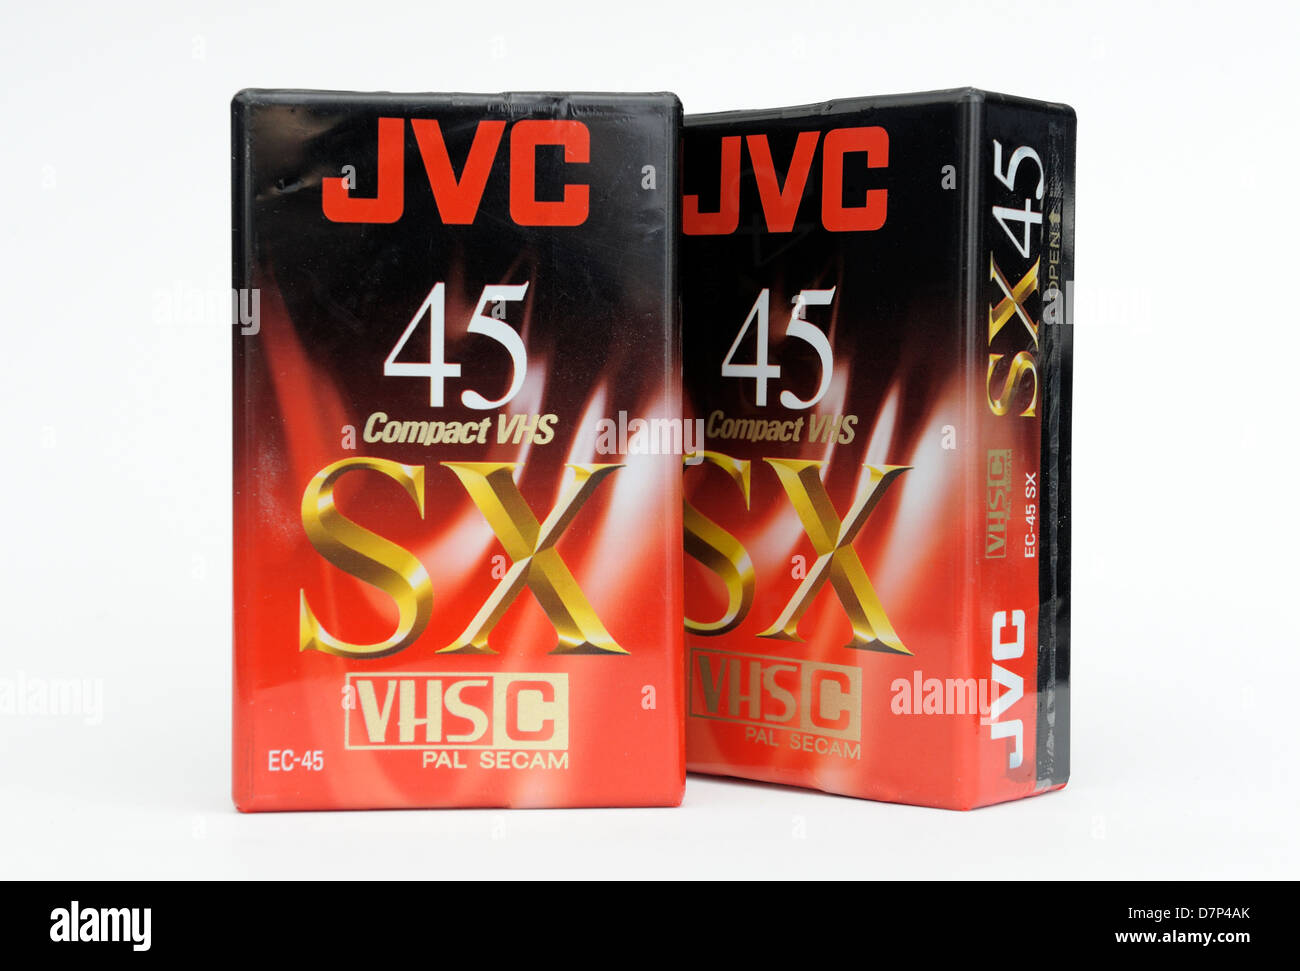 JVC 45 minutes VHS pal secam compact C bandes vidéo Banque D'Images